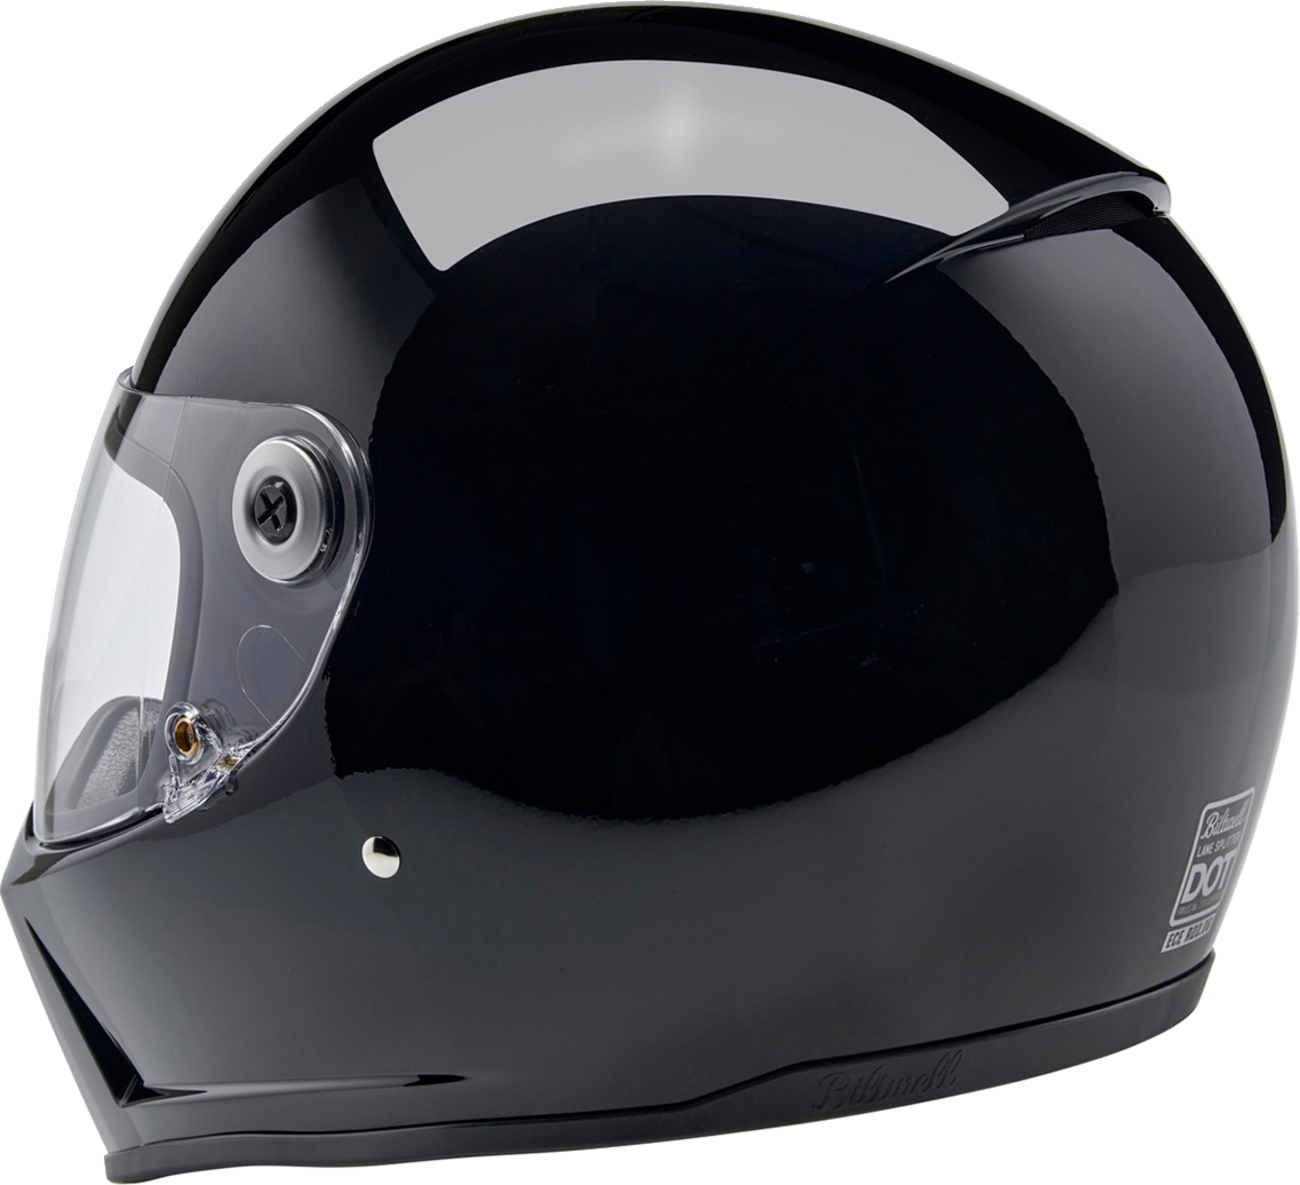 BILTWELL Lane Splitter Helmet - Gloss Black - Medium 1004-101-503